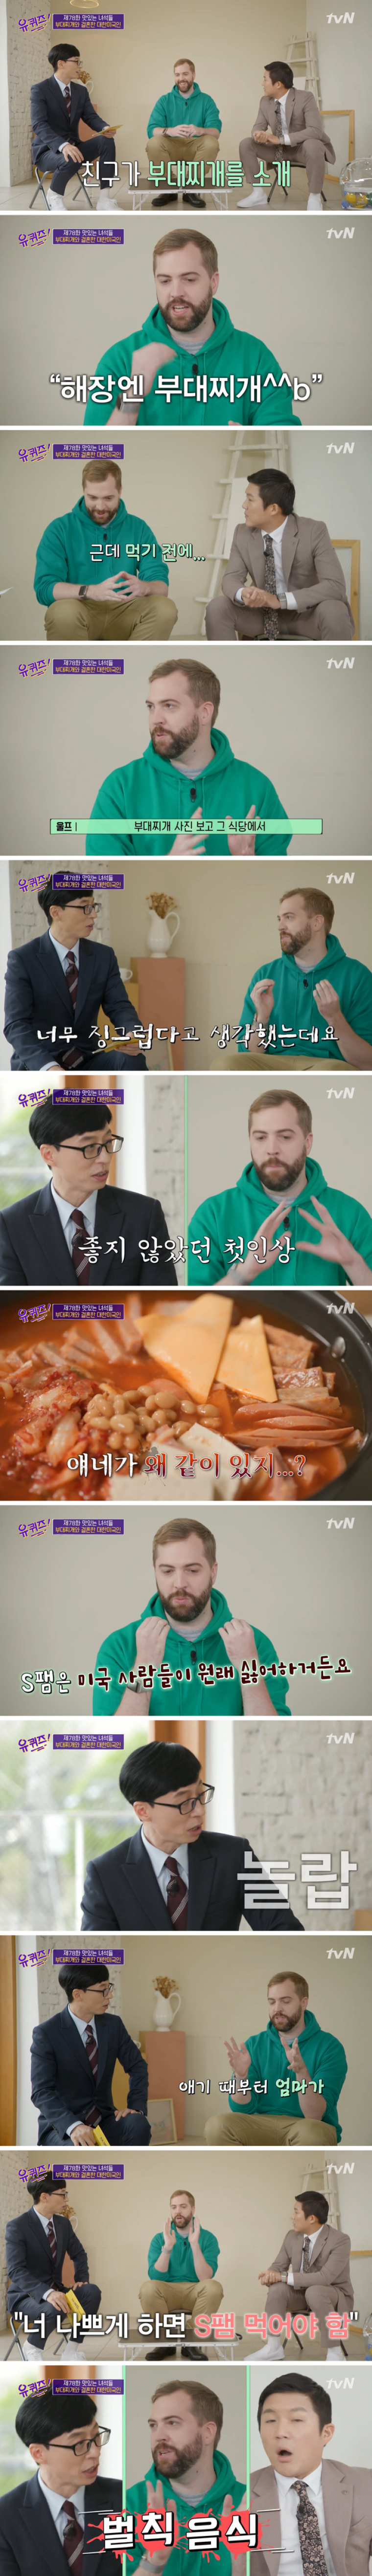 한국 식당에서 스팸 보고 식겁한 미국인 ㅋㅋㅋ.jpg